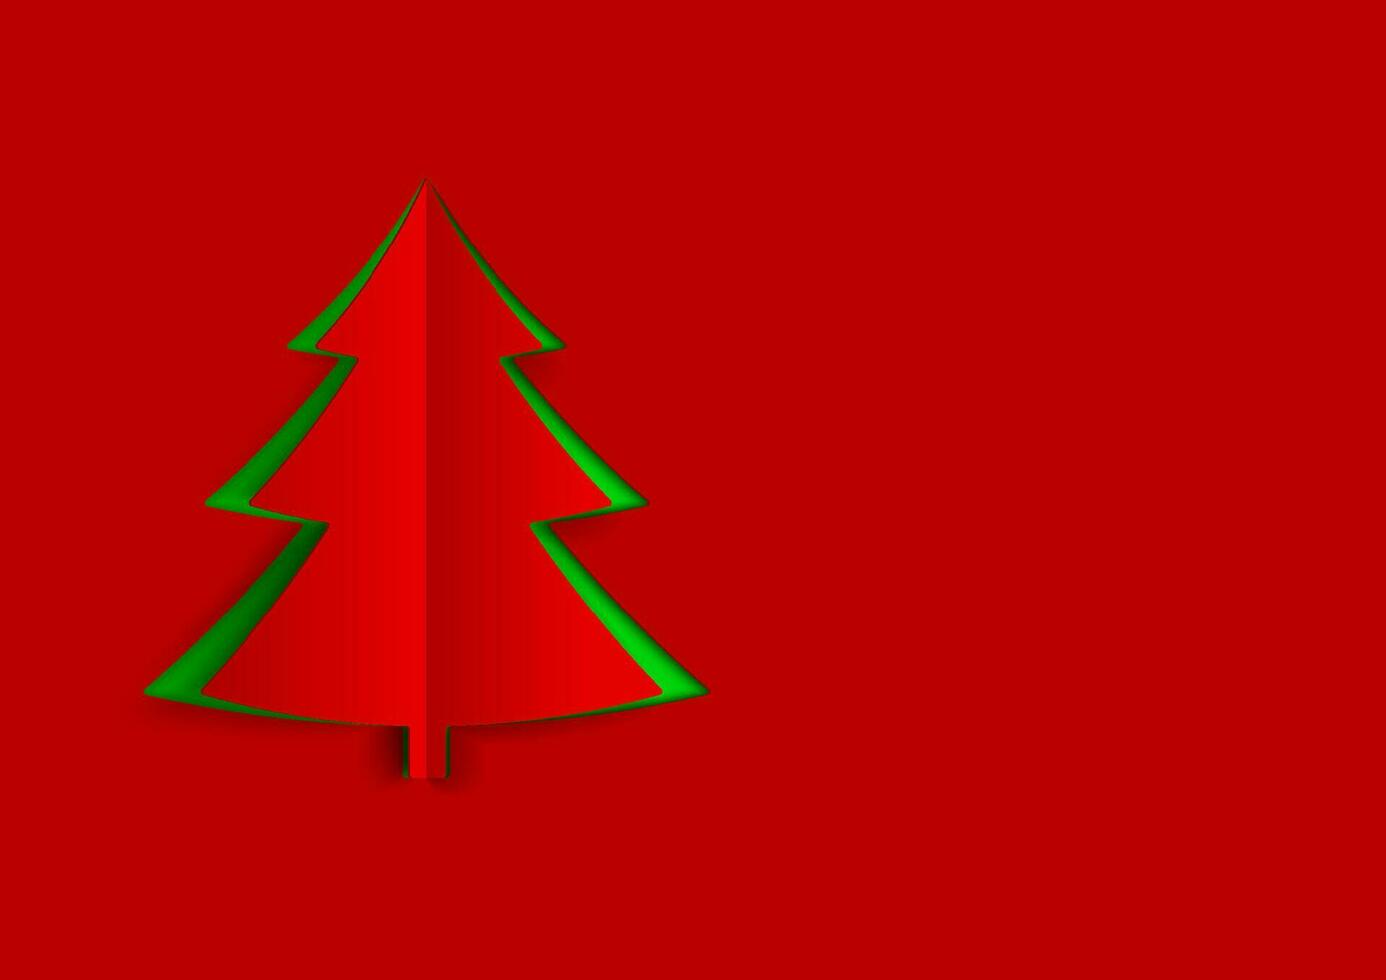 jul träd i papper konst stil med grön och röd Färg. jul abstrakt bakgrund med röd papper lager. vektor